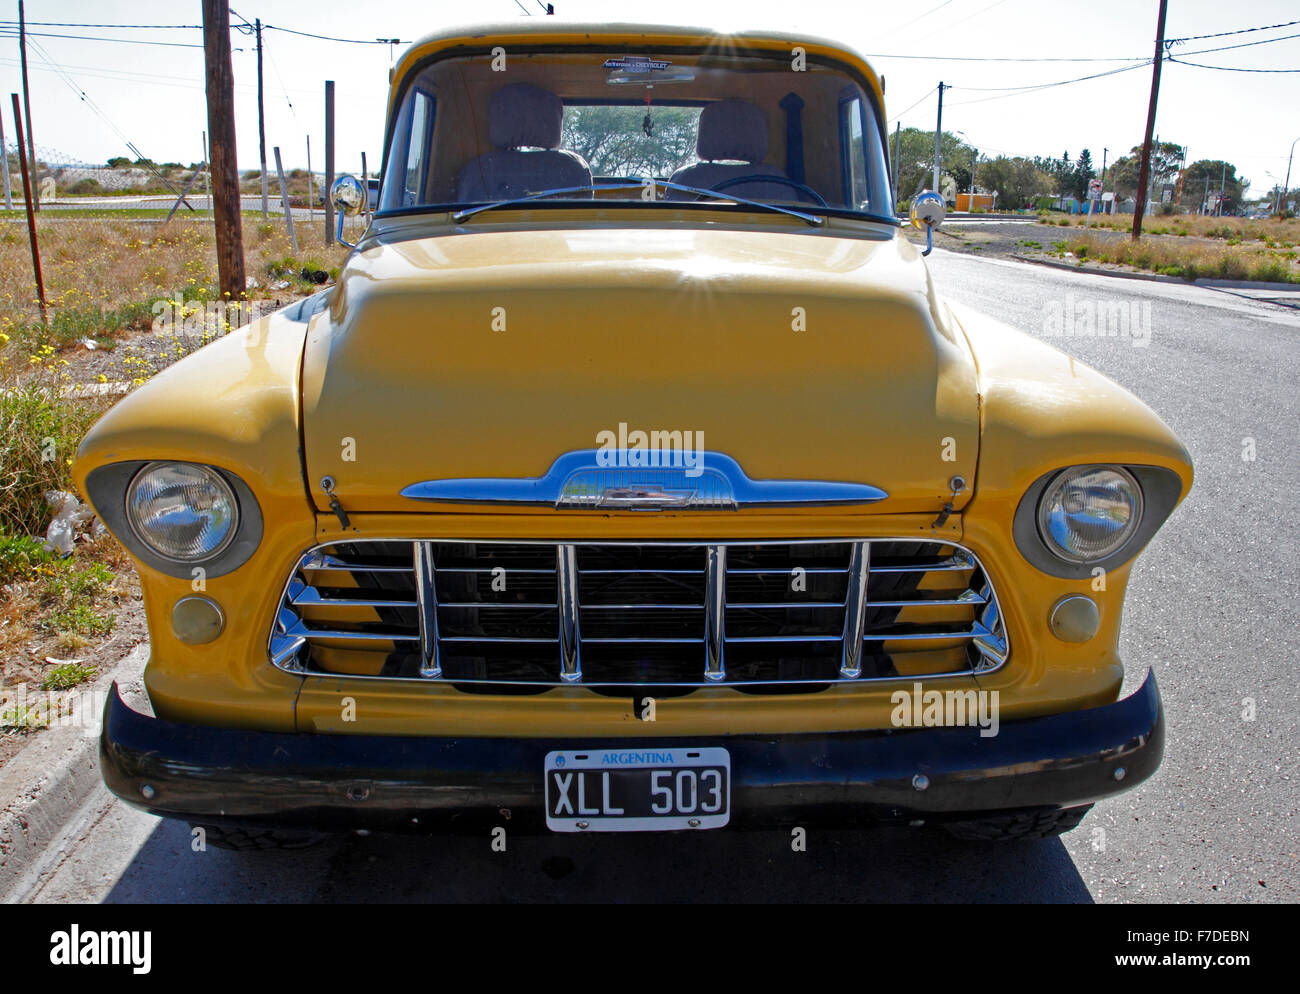 Vieux pick up Chevrolet jaune garée dans la rue Banque D'Images